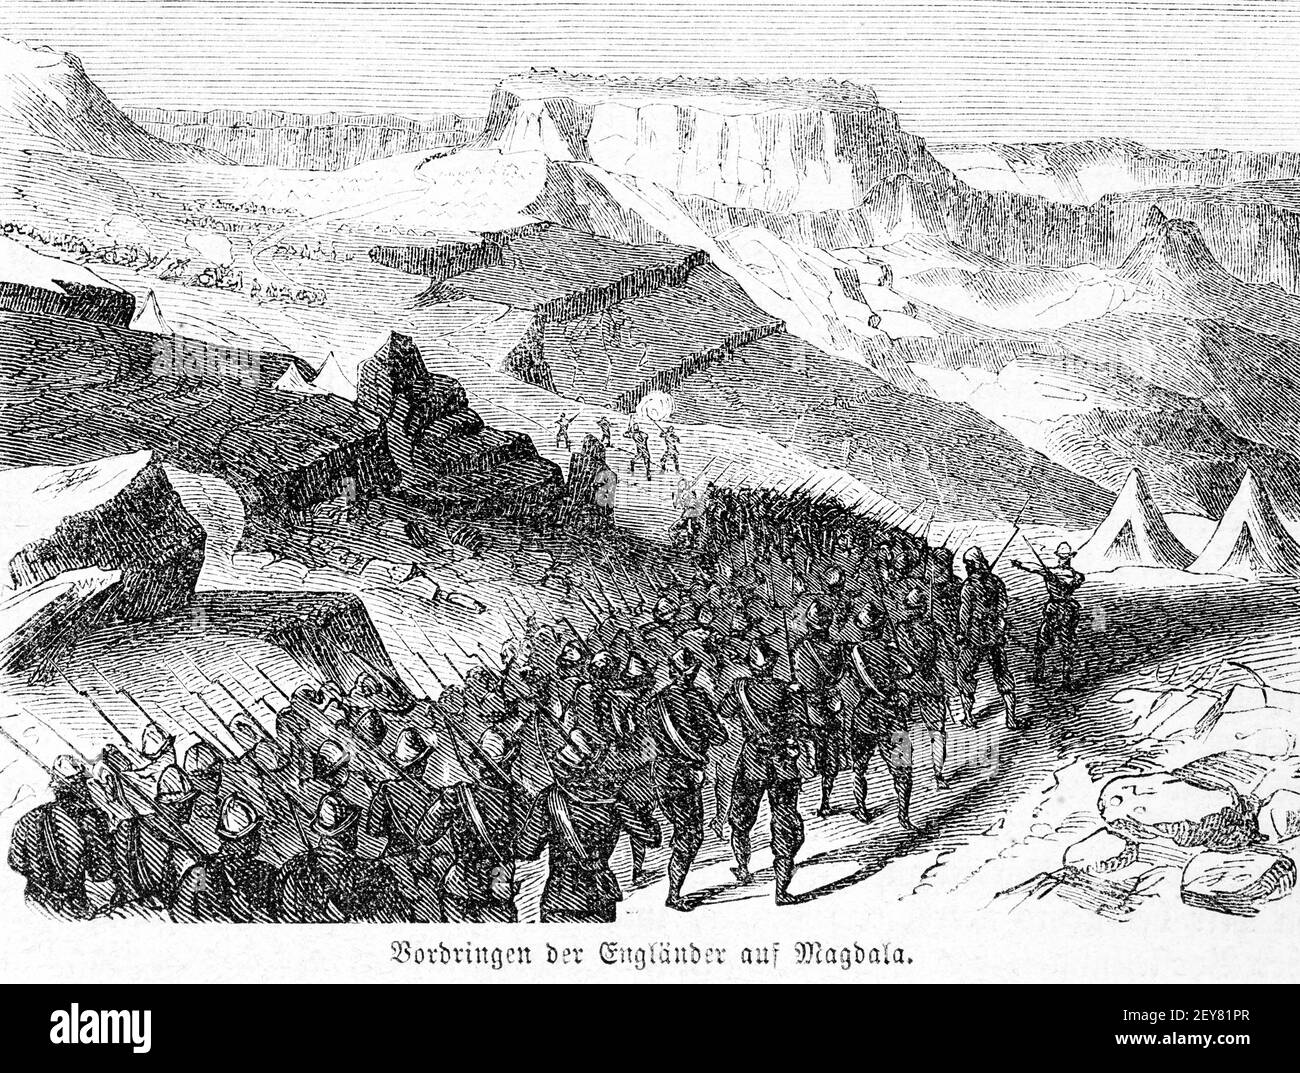 Englische Truppen marschieren auf Magdala oder Amba Mariam, Dr. Richard Andree, Abessina, Äthiopien, Ostafrika, Abessinien, Land und Volk, Leipzig 1869 Stockfoto